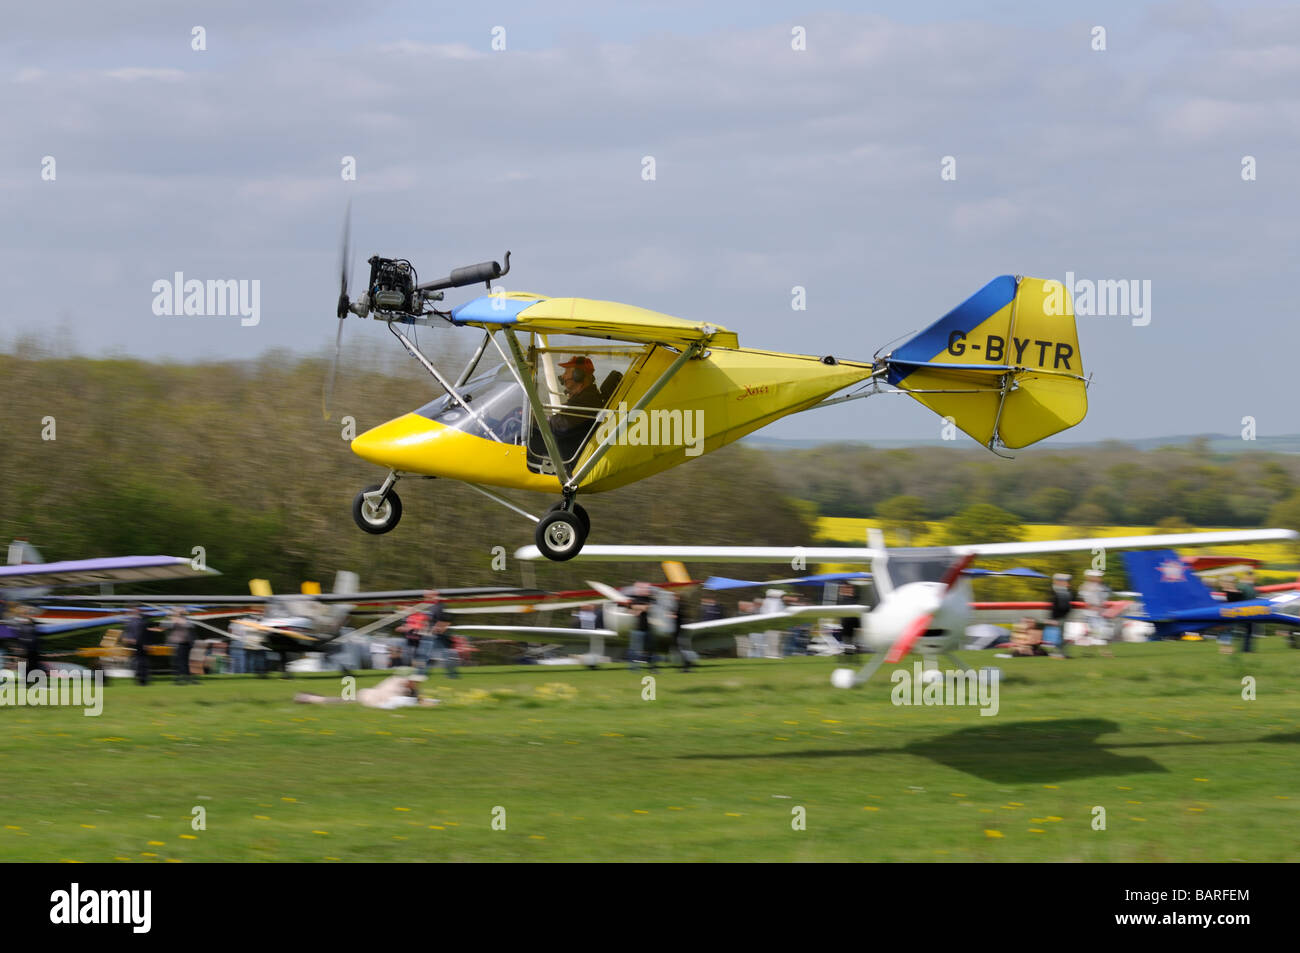 Avion Ultra X'Air G-BYTR décolle à l'aérodrome de Popham Hampshire Angleterre Banque D'Images